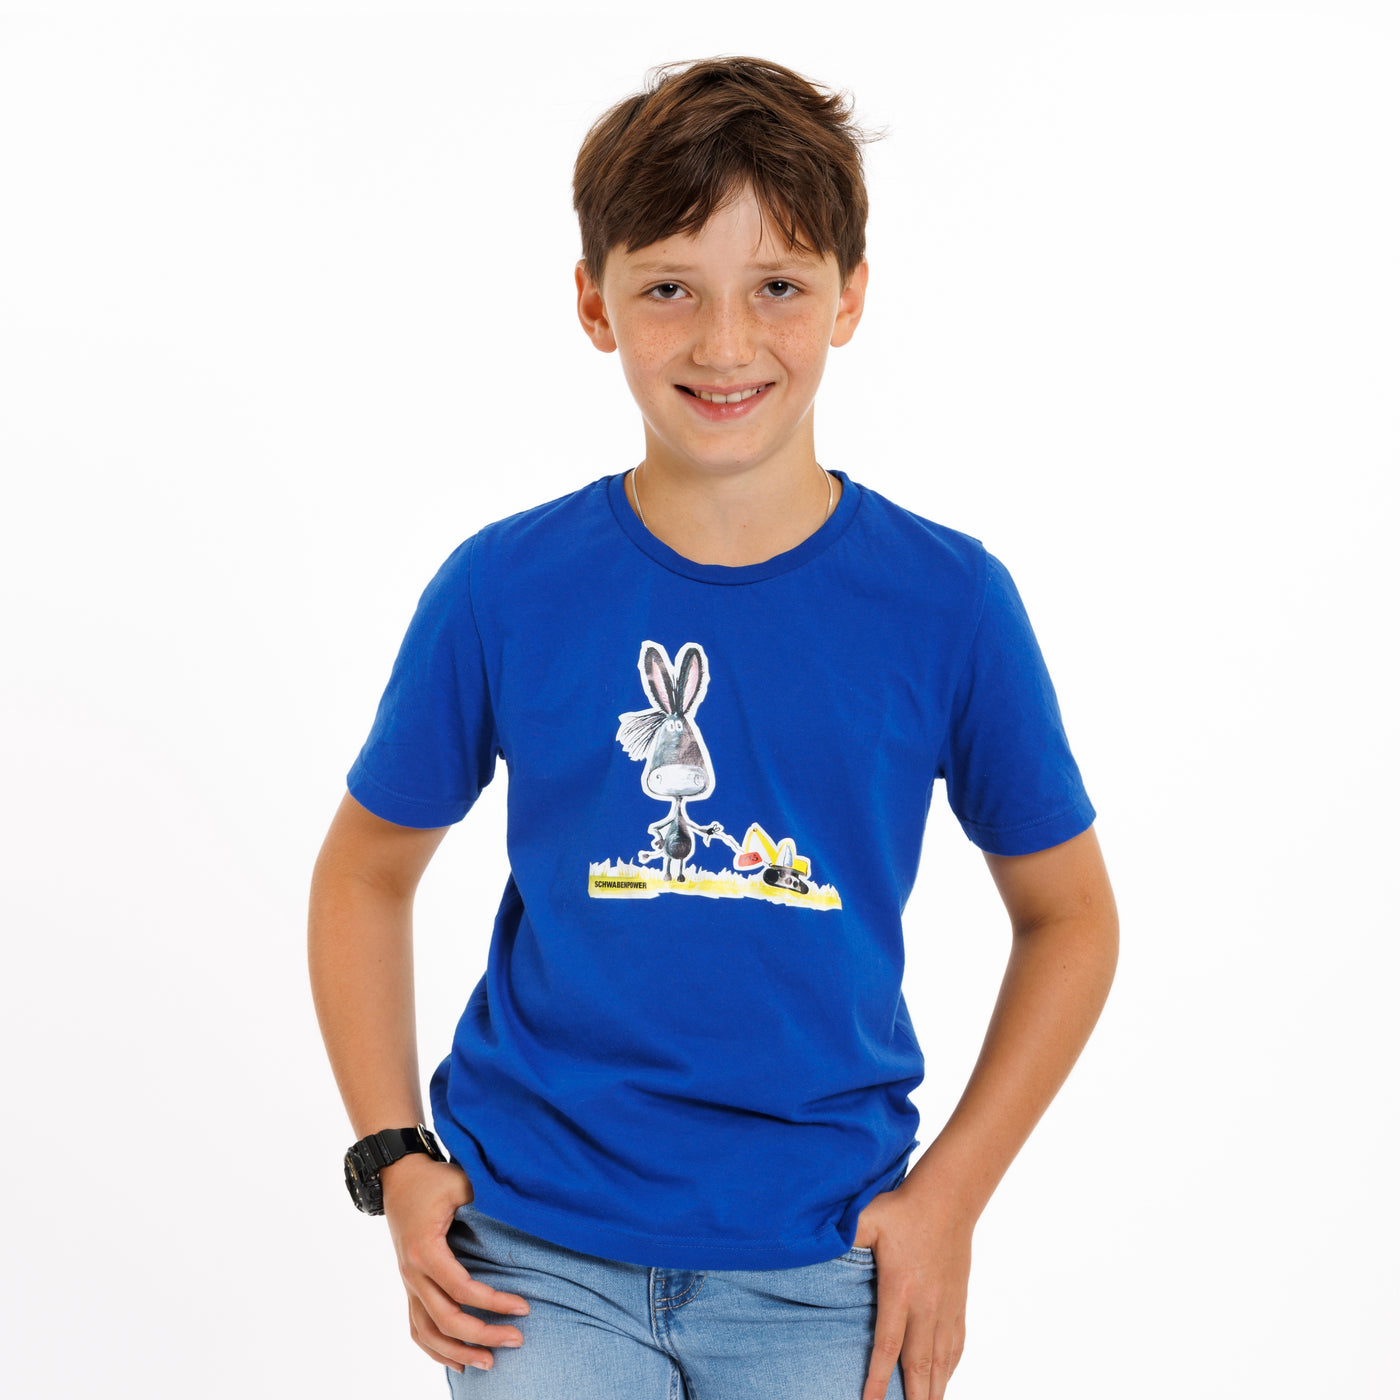 Kinder T-Shirt in royalblau mit Eslechen und Bagger